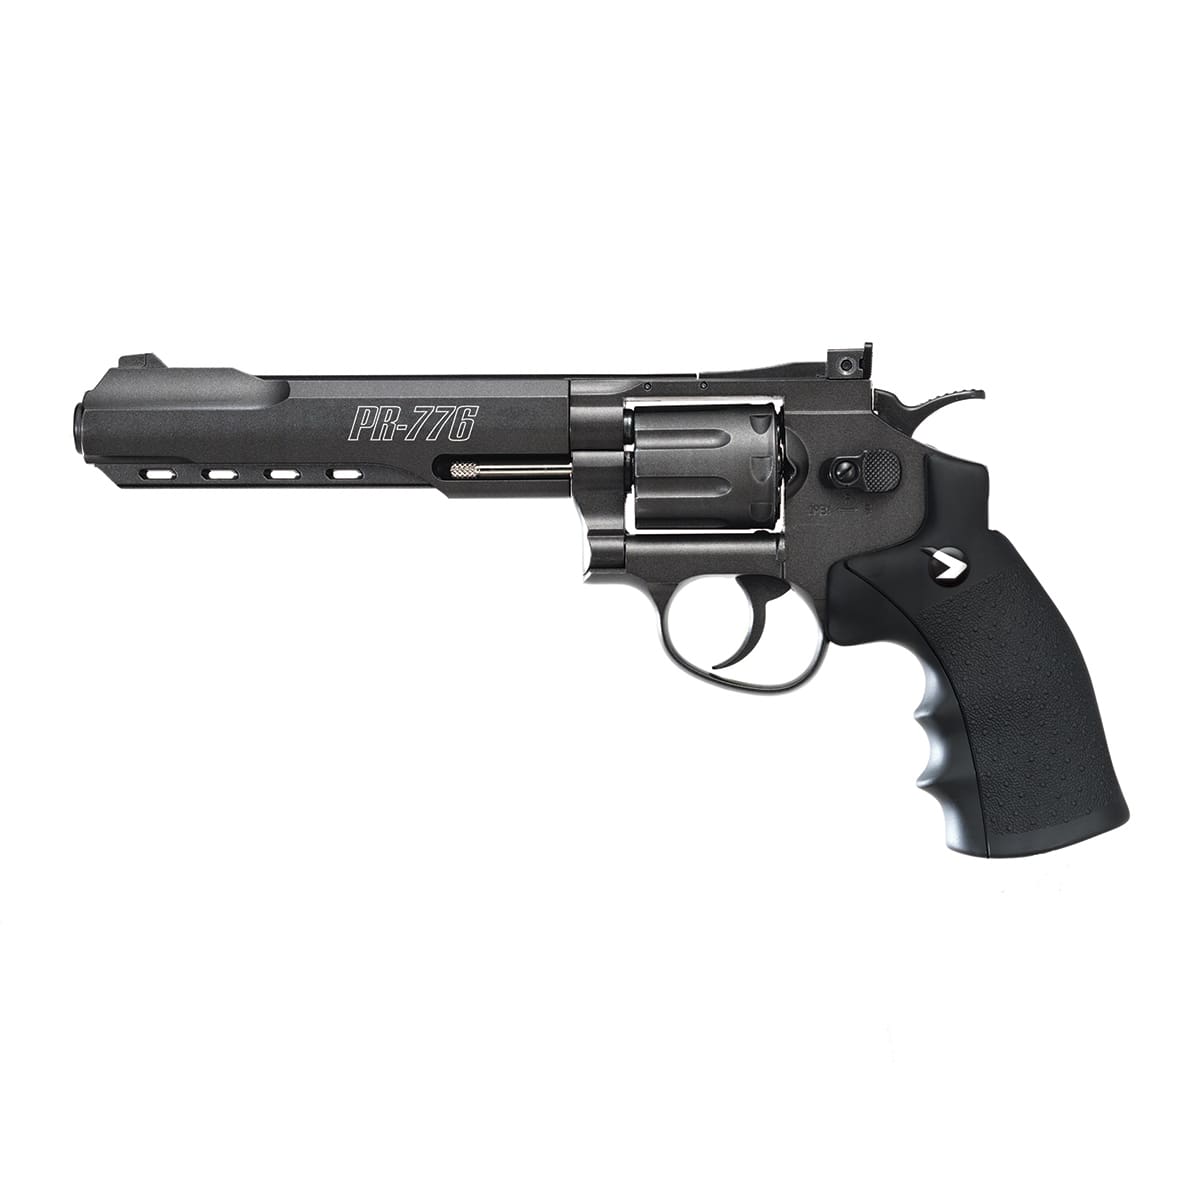 Gamo PR-776 high power CO2 Revolver 6 inch barrel